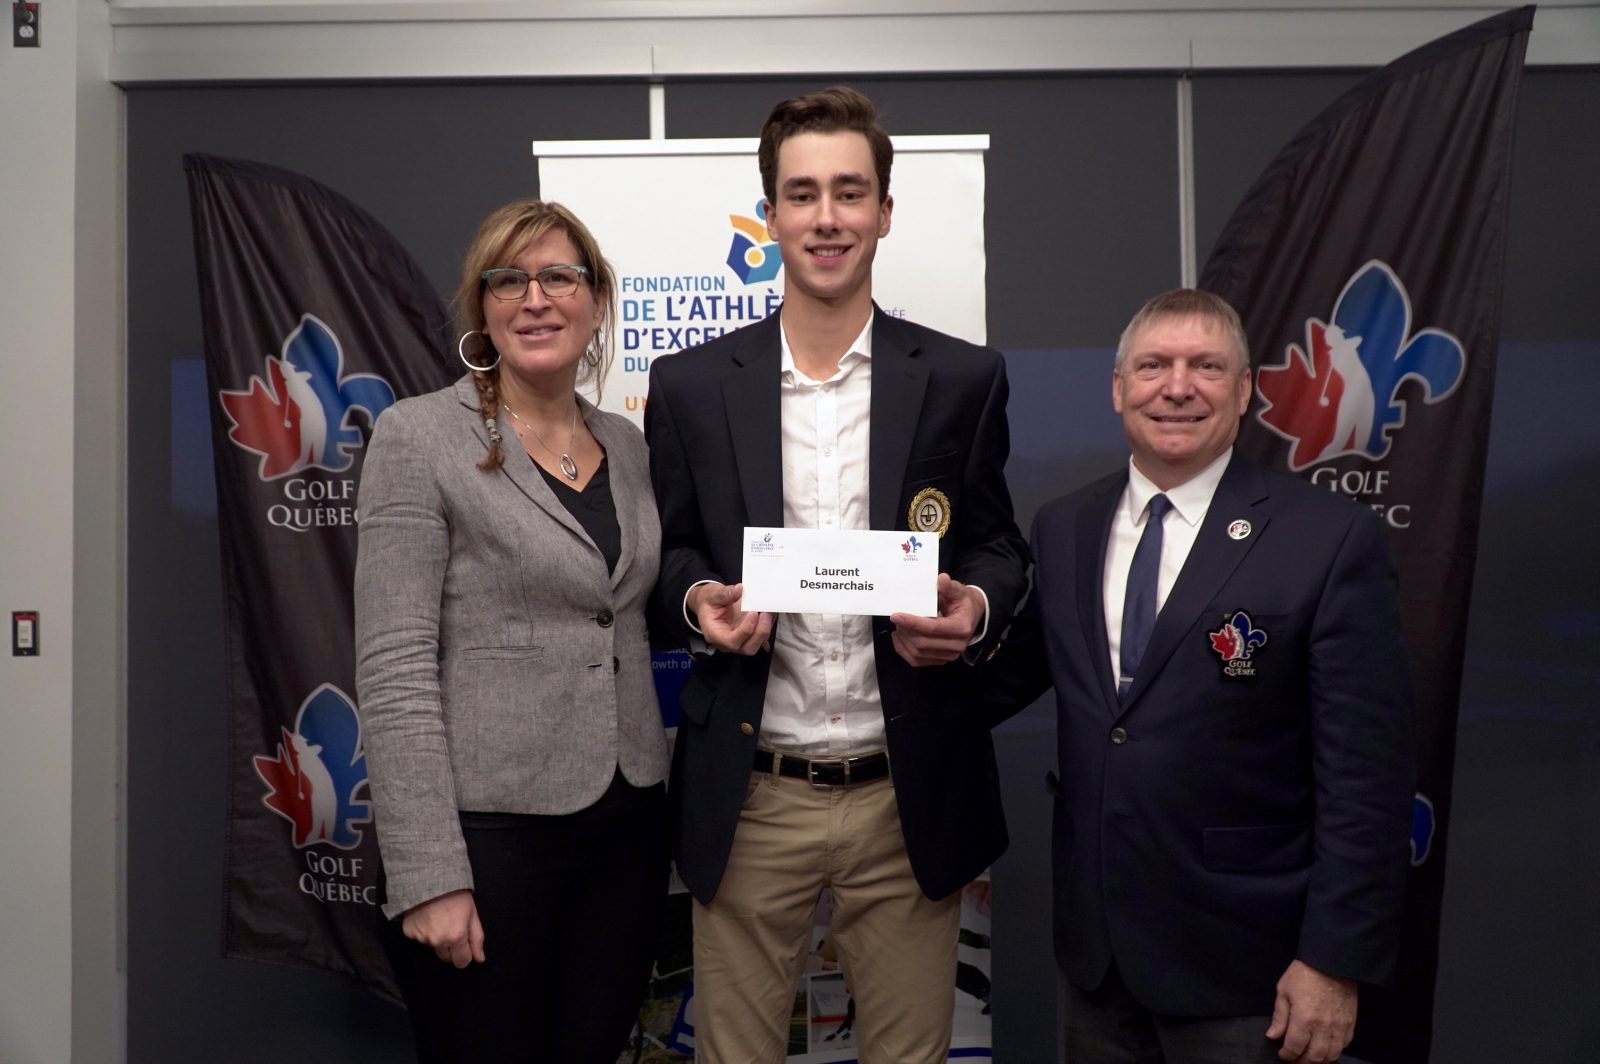 Le golfeur Laurent Desmarchais reçoit une bourse de 4000 $